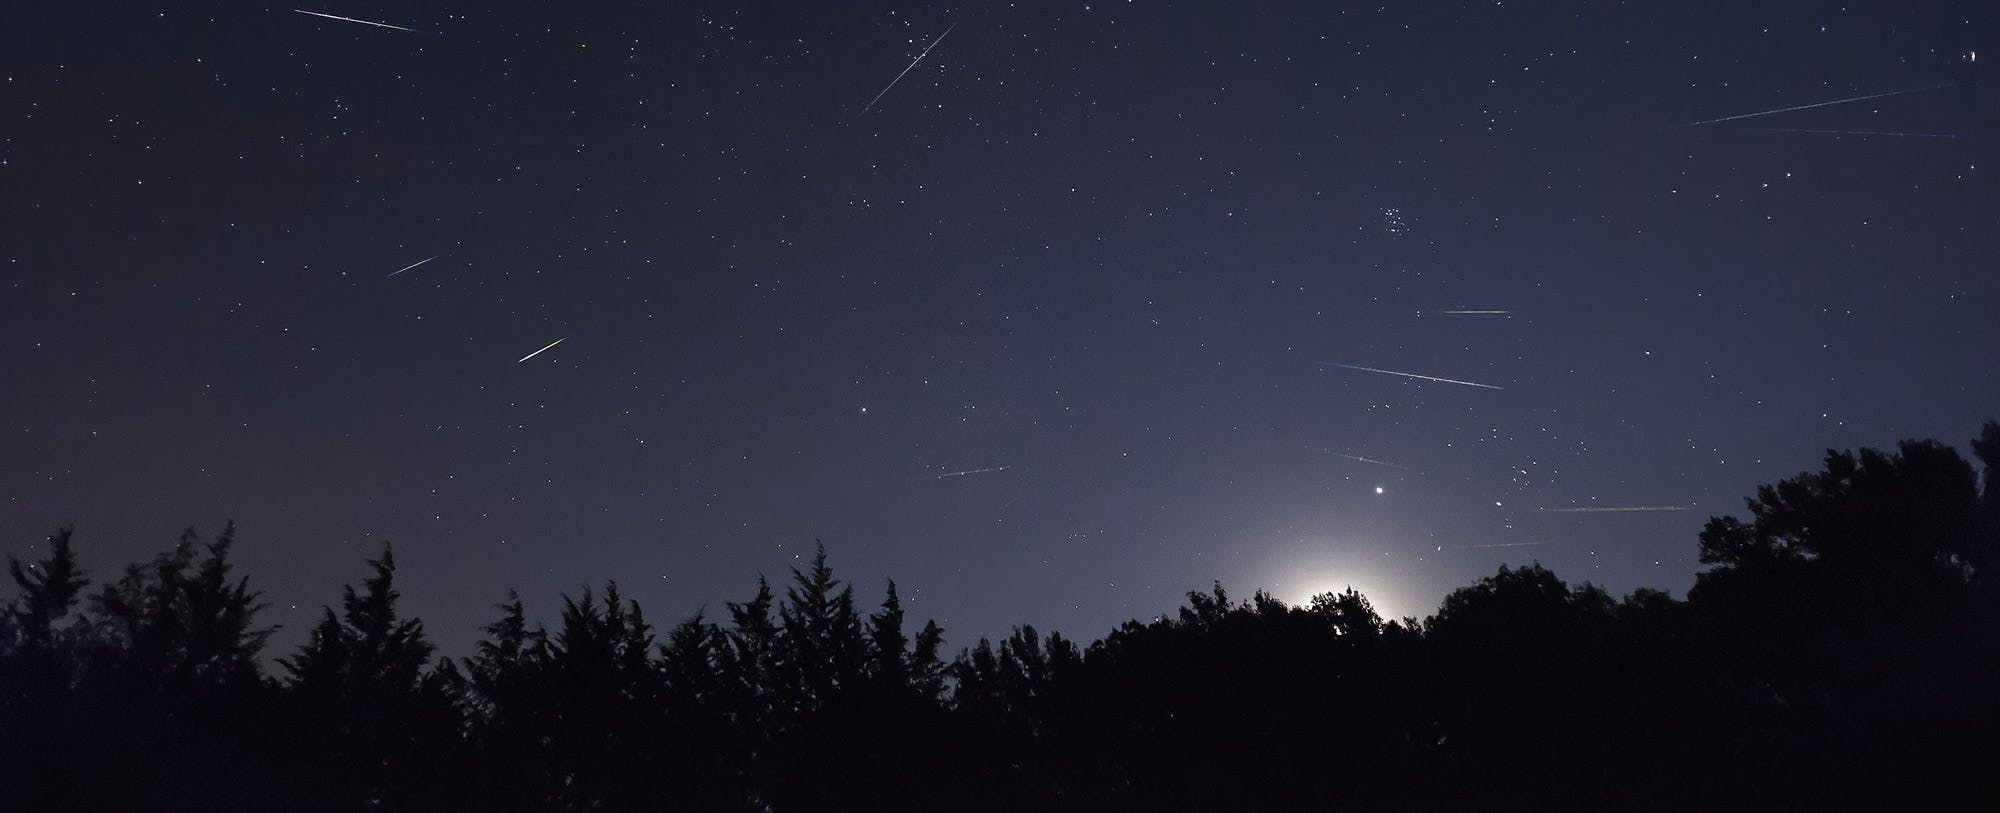 Perseid Meteor Shower: What Is It?